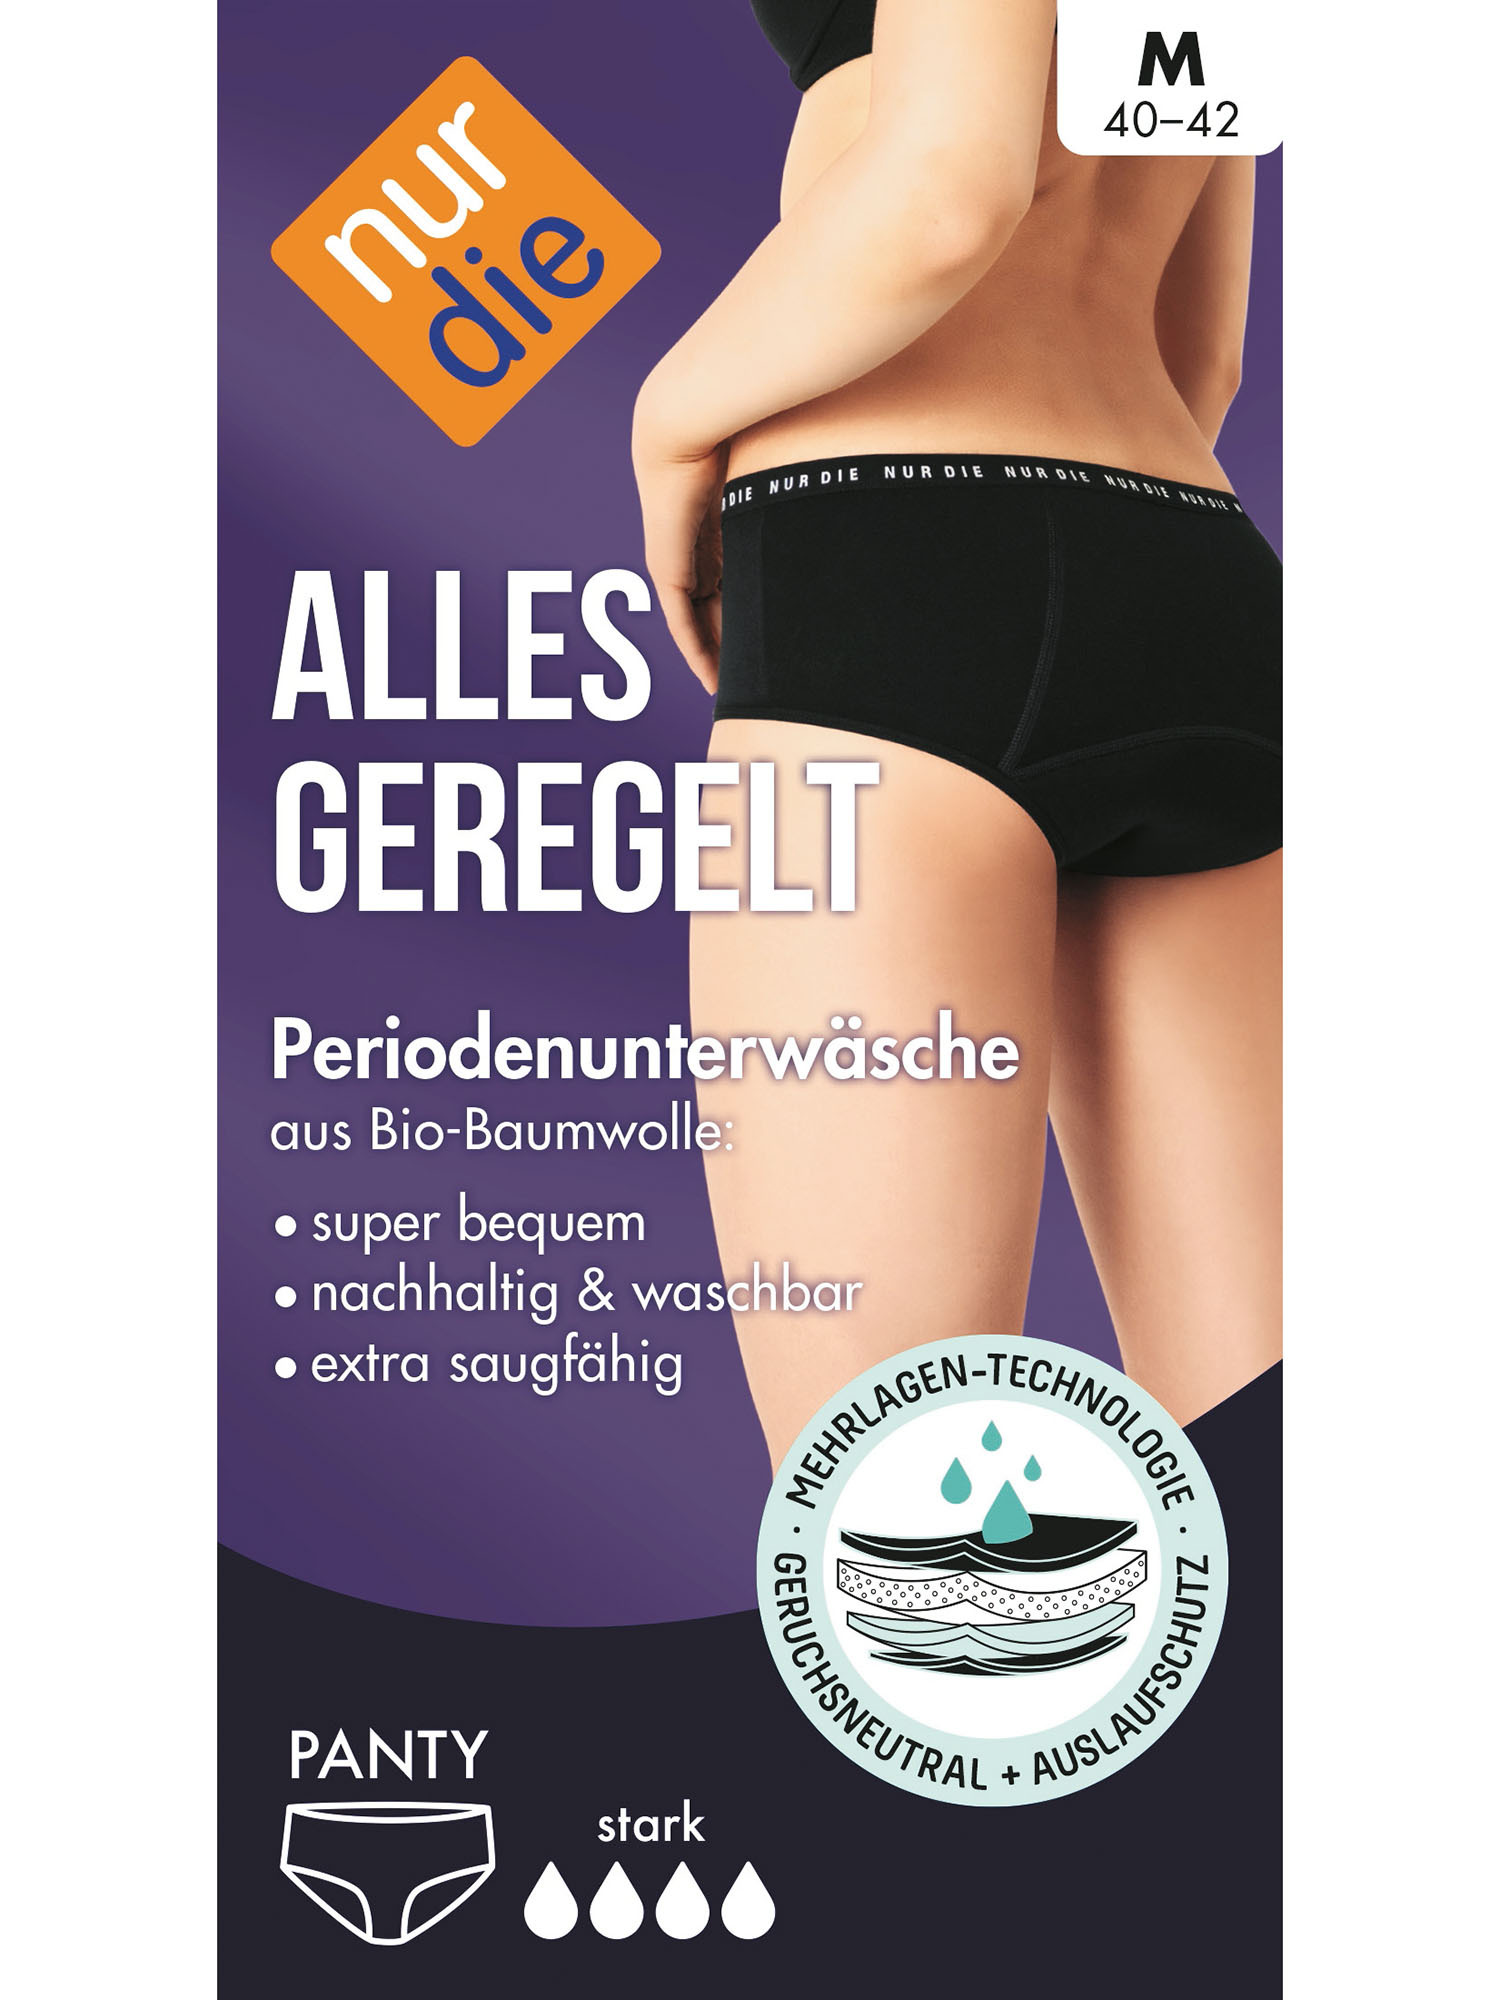 Трусы Nur Die Periodenunterwäsche Alles Geregelt Panty stark 1er Pack, черный